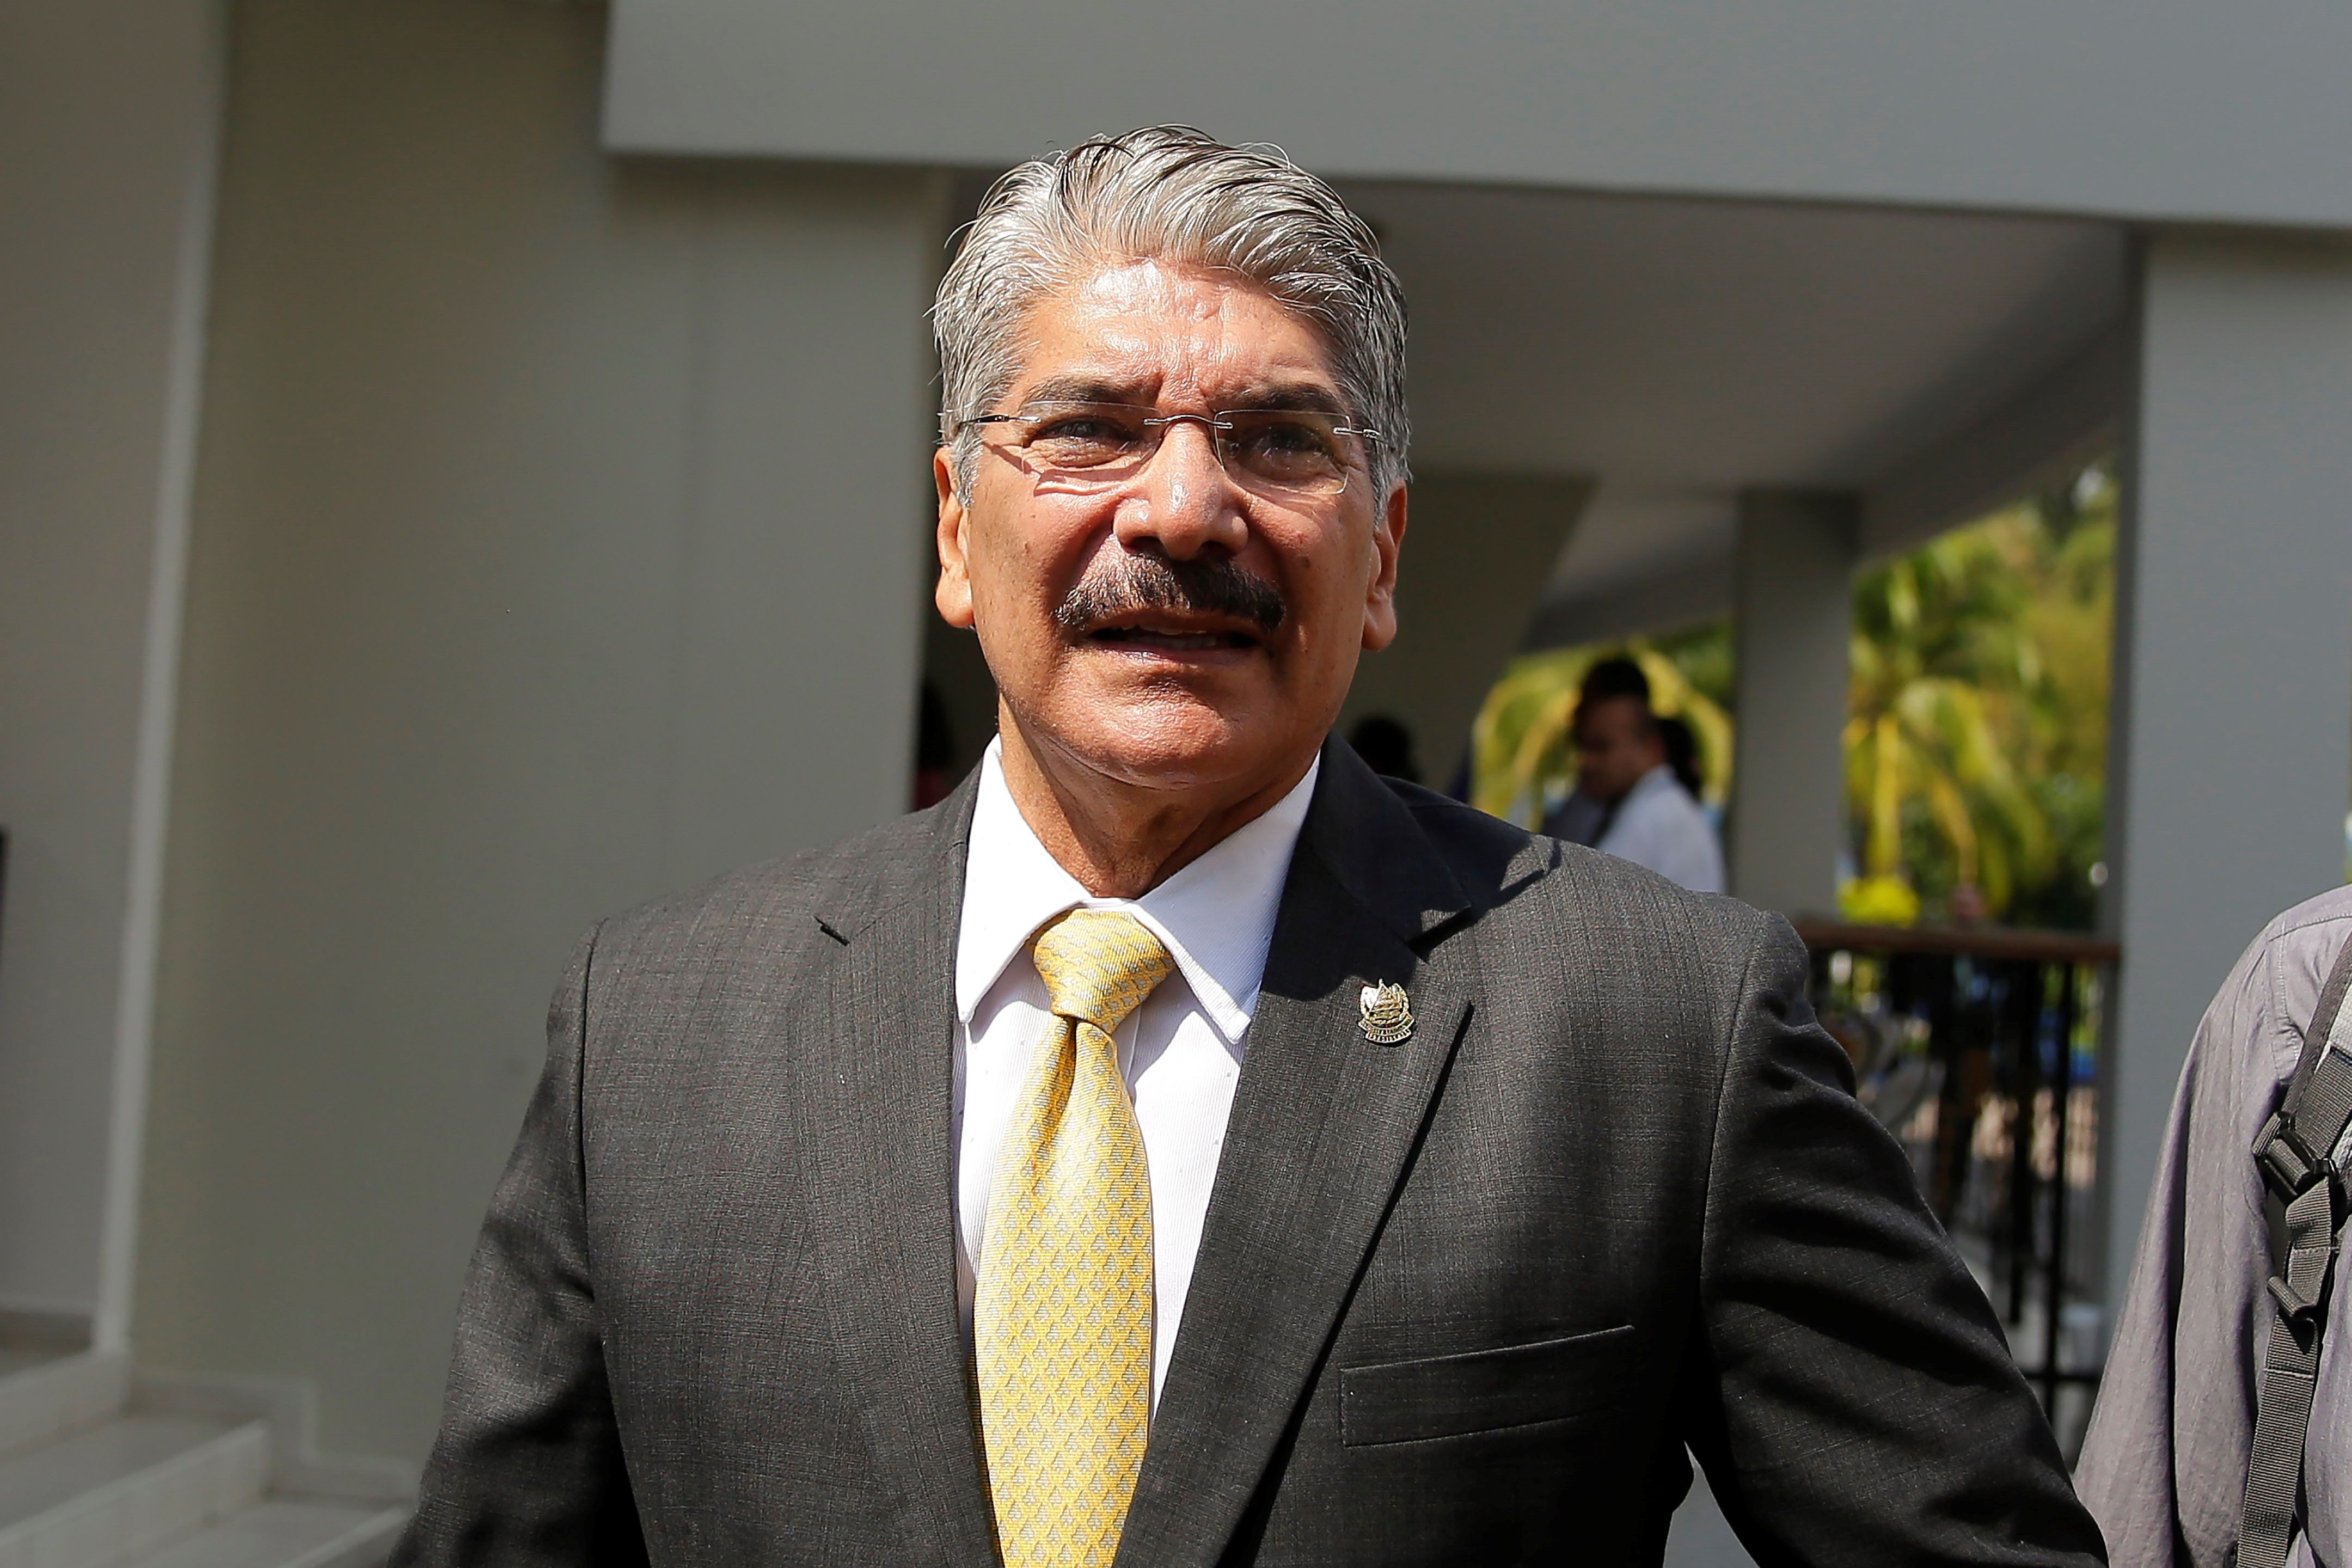 El diputado opositor y expresidente de la Asamblea Legislativa de El Salvador, Norman Quijano, ha reiterado que no negoció con pandillas. (Foto Prensa Libre: EFE)